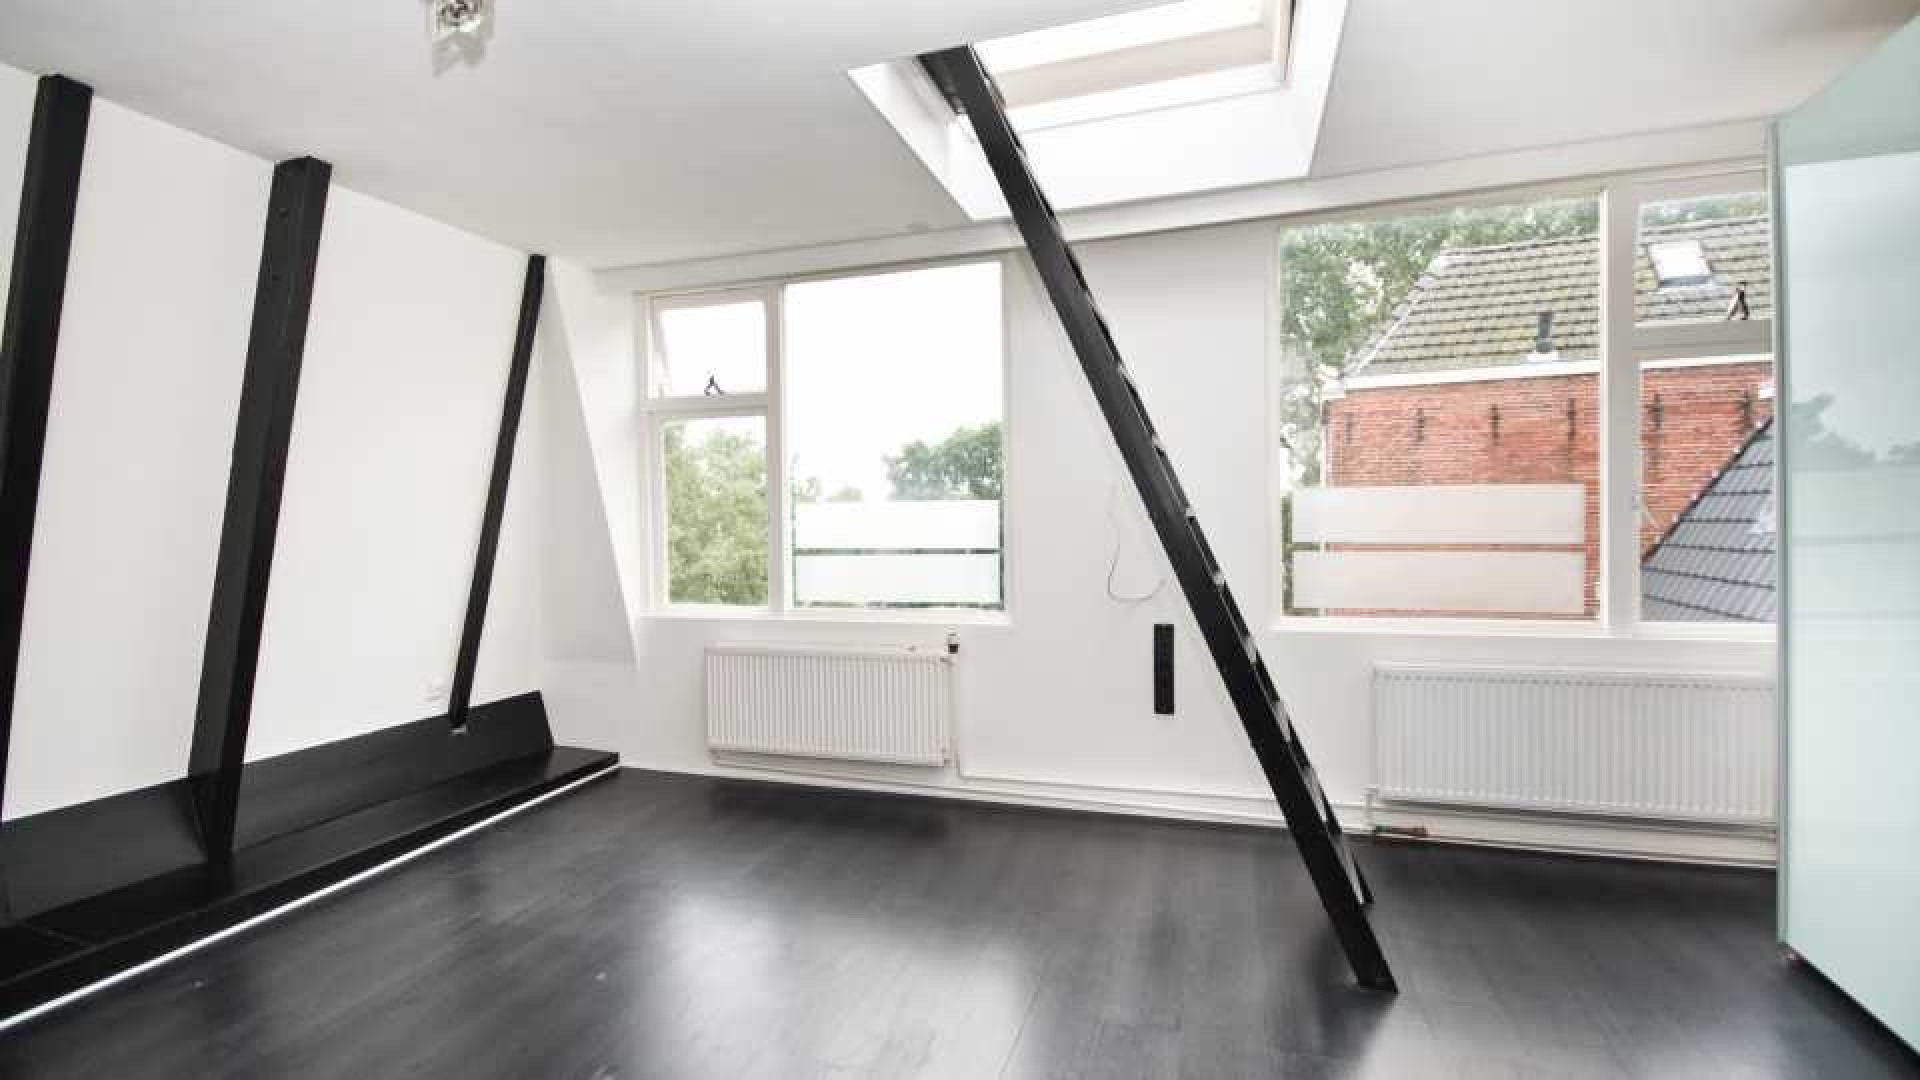 Victoria Koblenko en haar vriend Levchenko zetten hun dubbele bovenhuis in Groningen te koop. Zie foto's 11